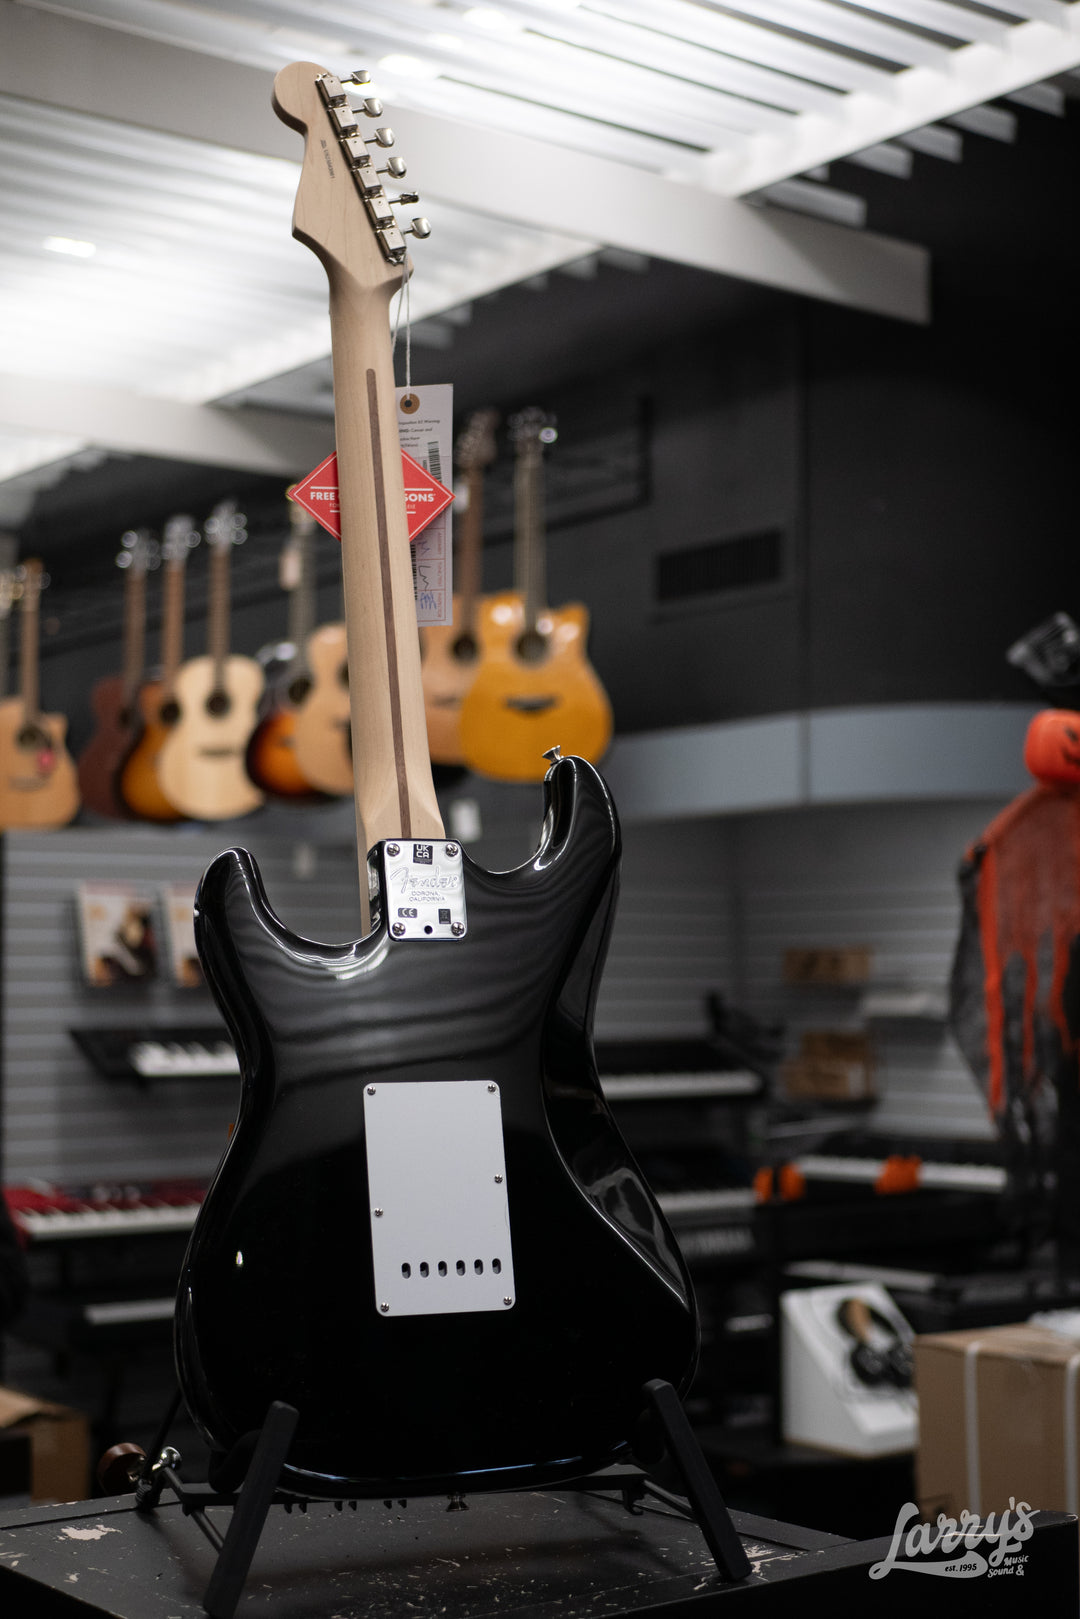 Fender Eric Clapton Stratocaster - Black